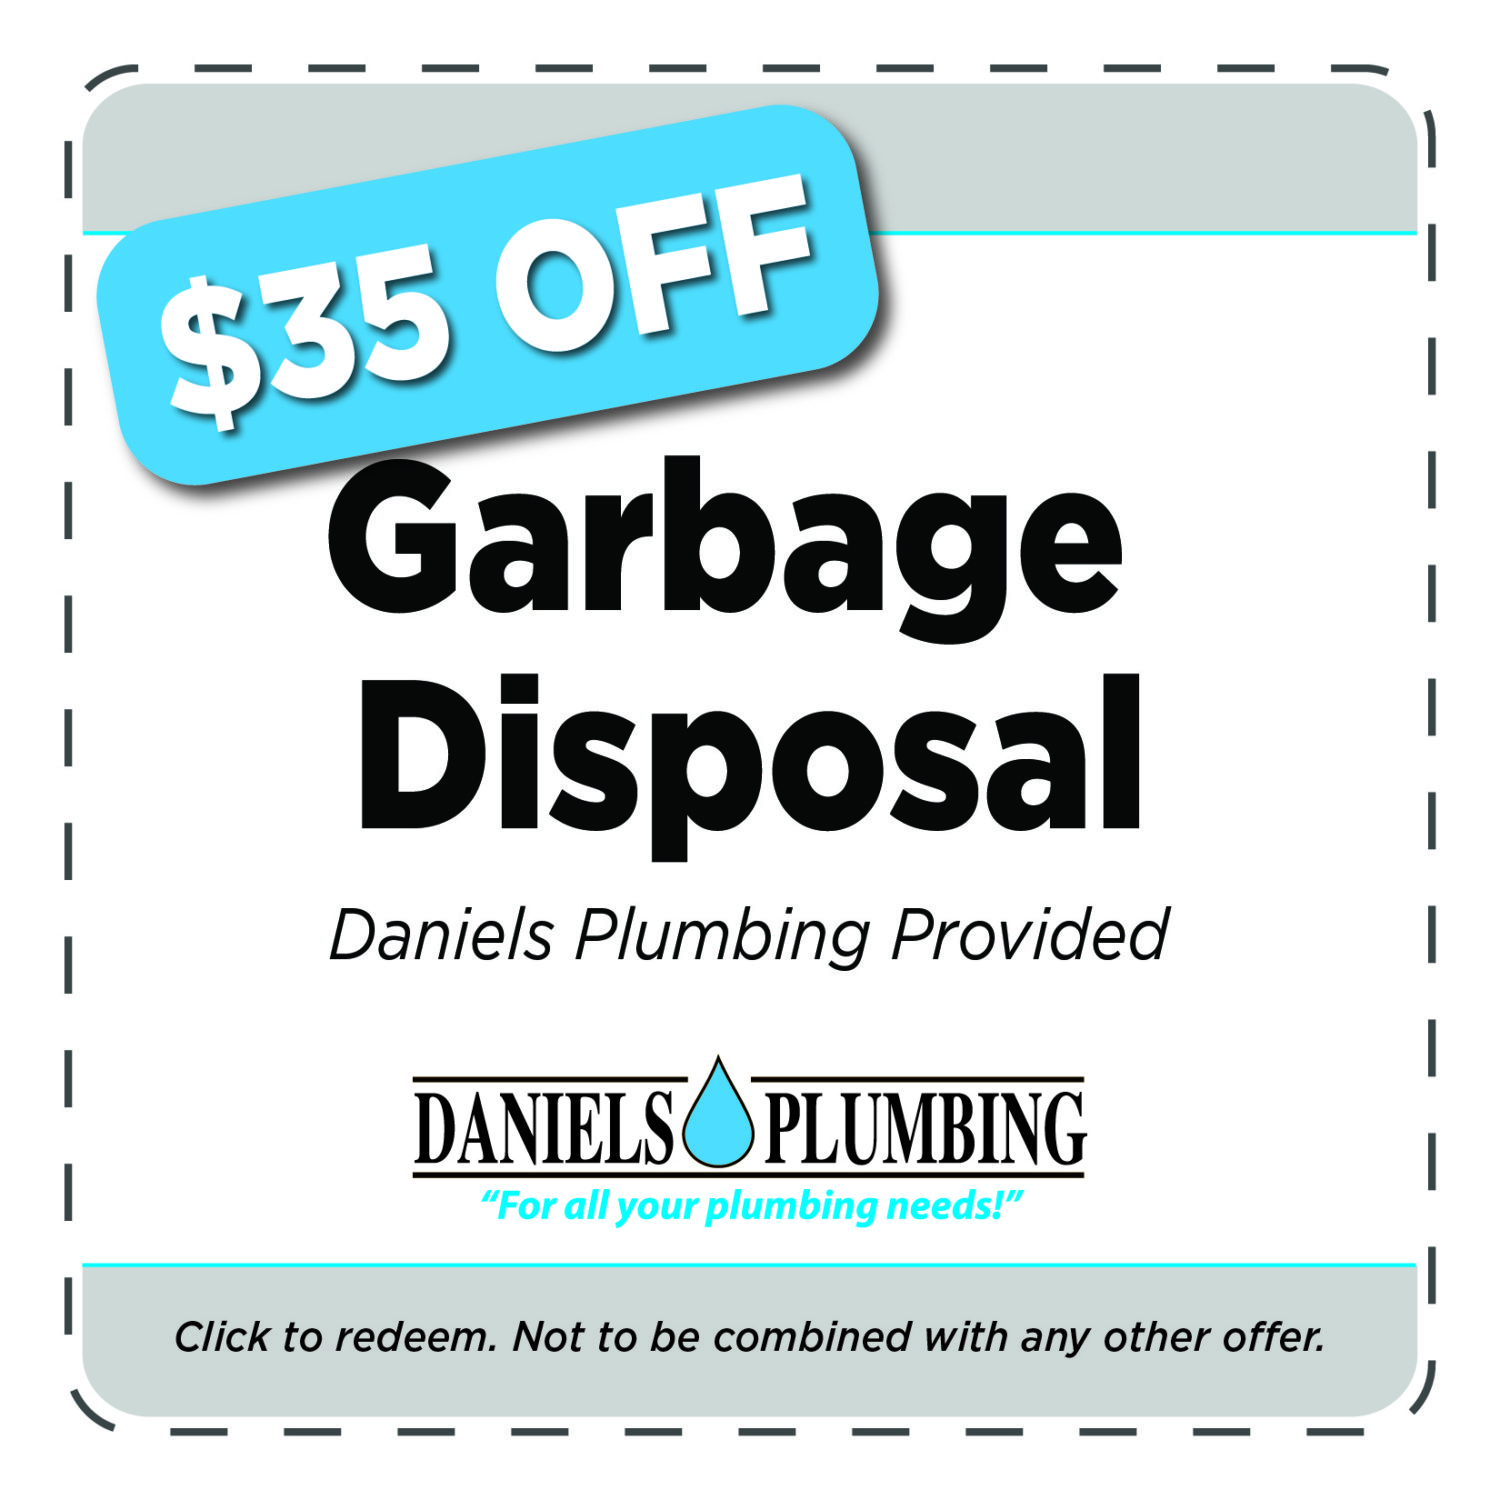 22-2 1124 Daniel's Plumbing Coupons - Garbage Disposal-07